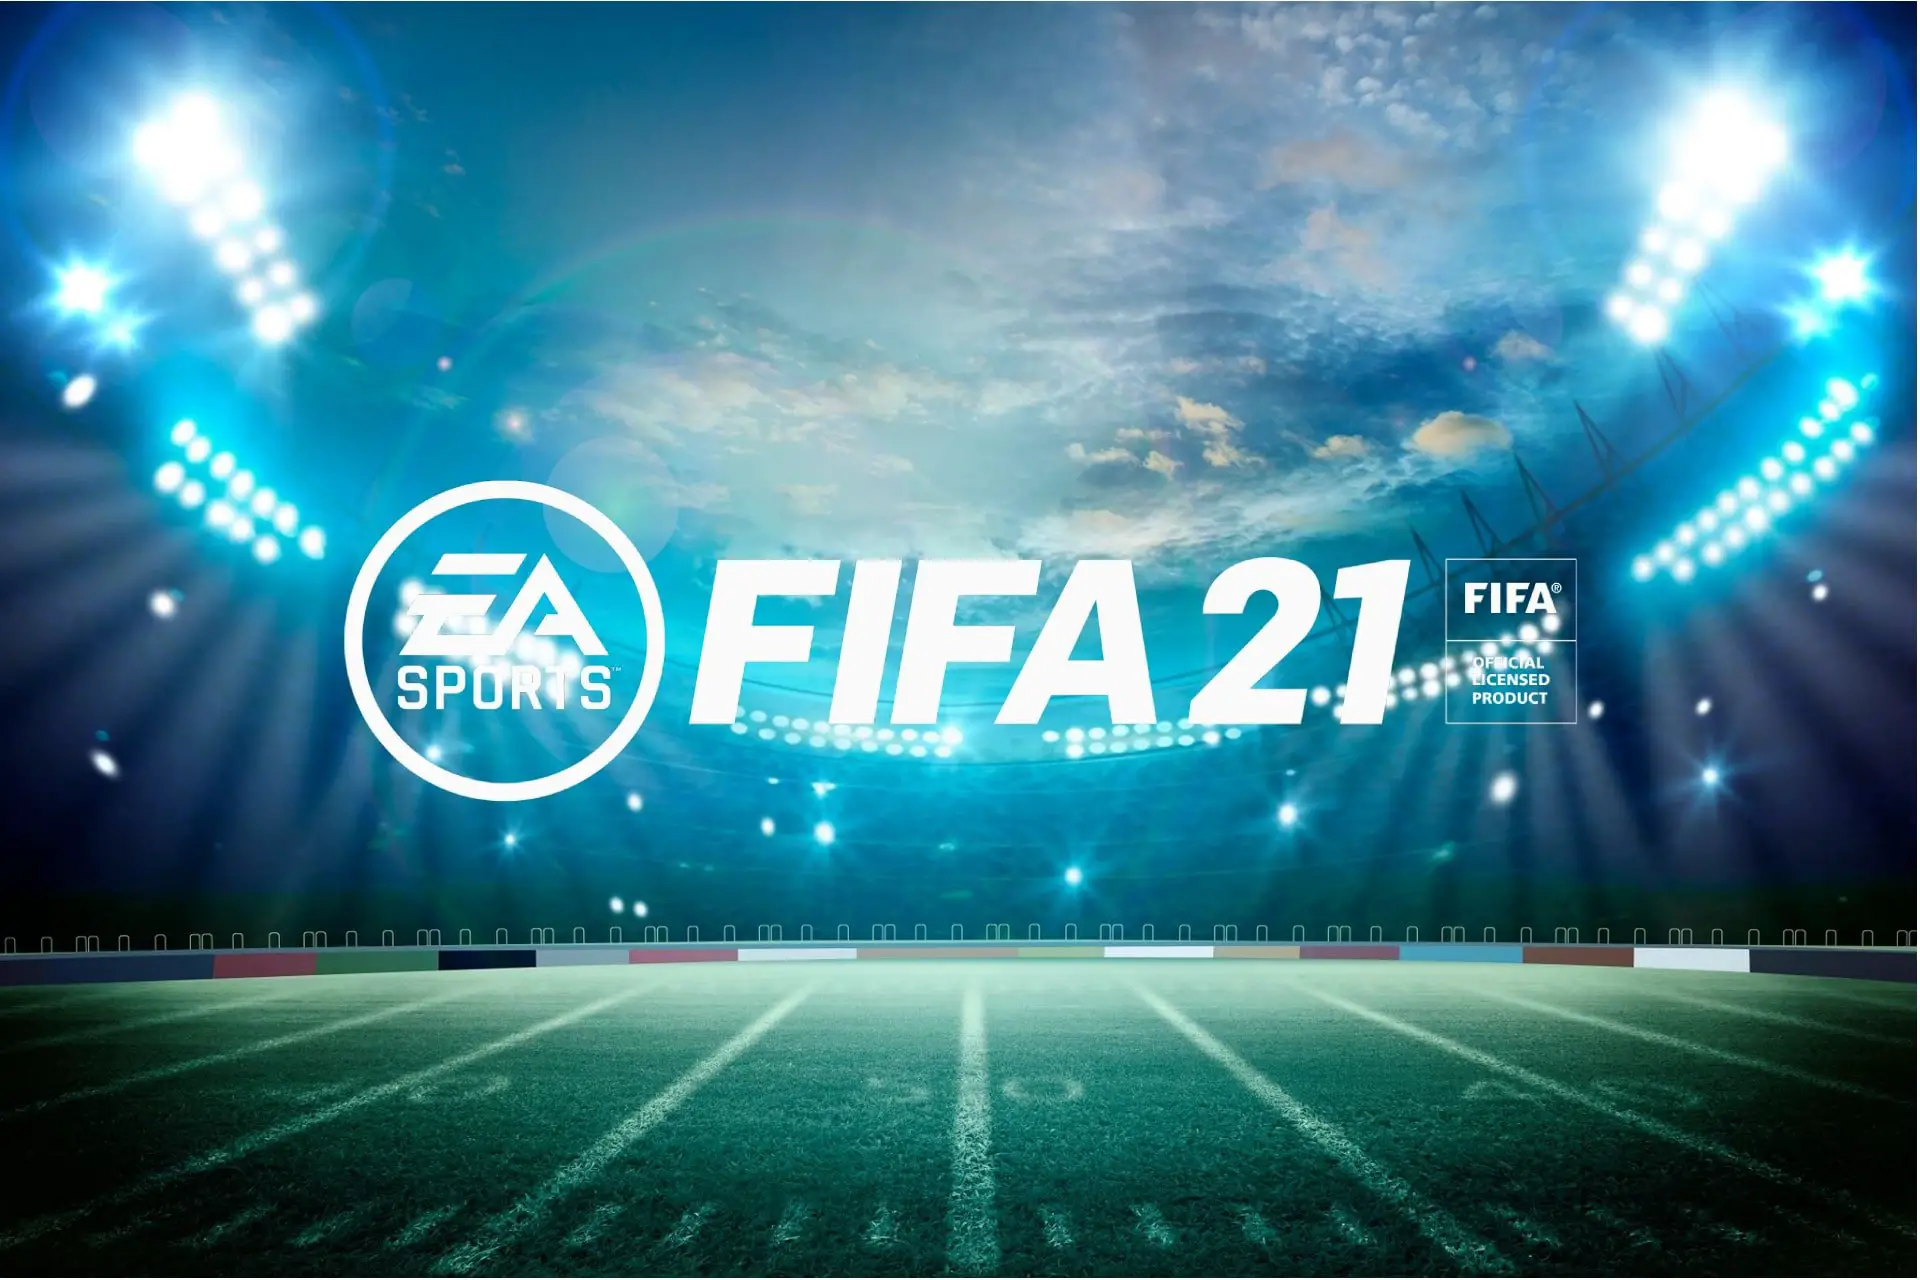 El error de los requisitos del sistema FIFA 21 arruinó el juego para muchos  - Expertos En Linea